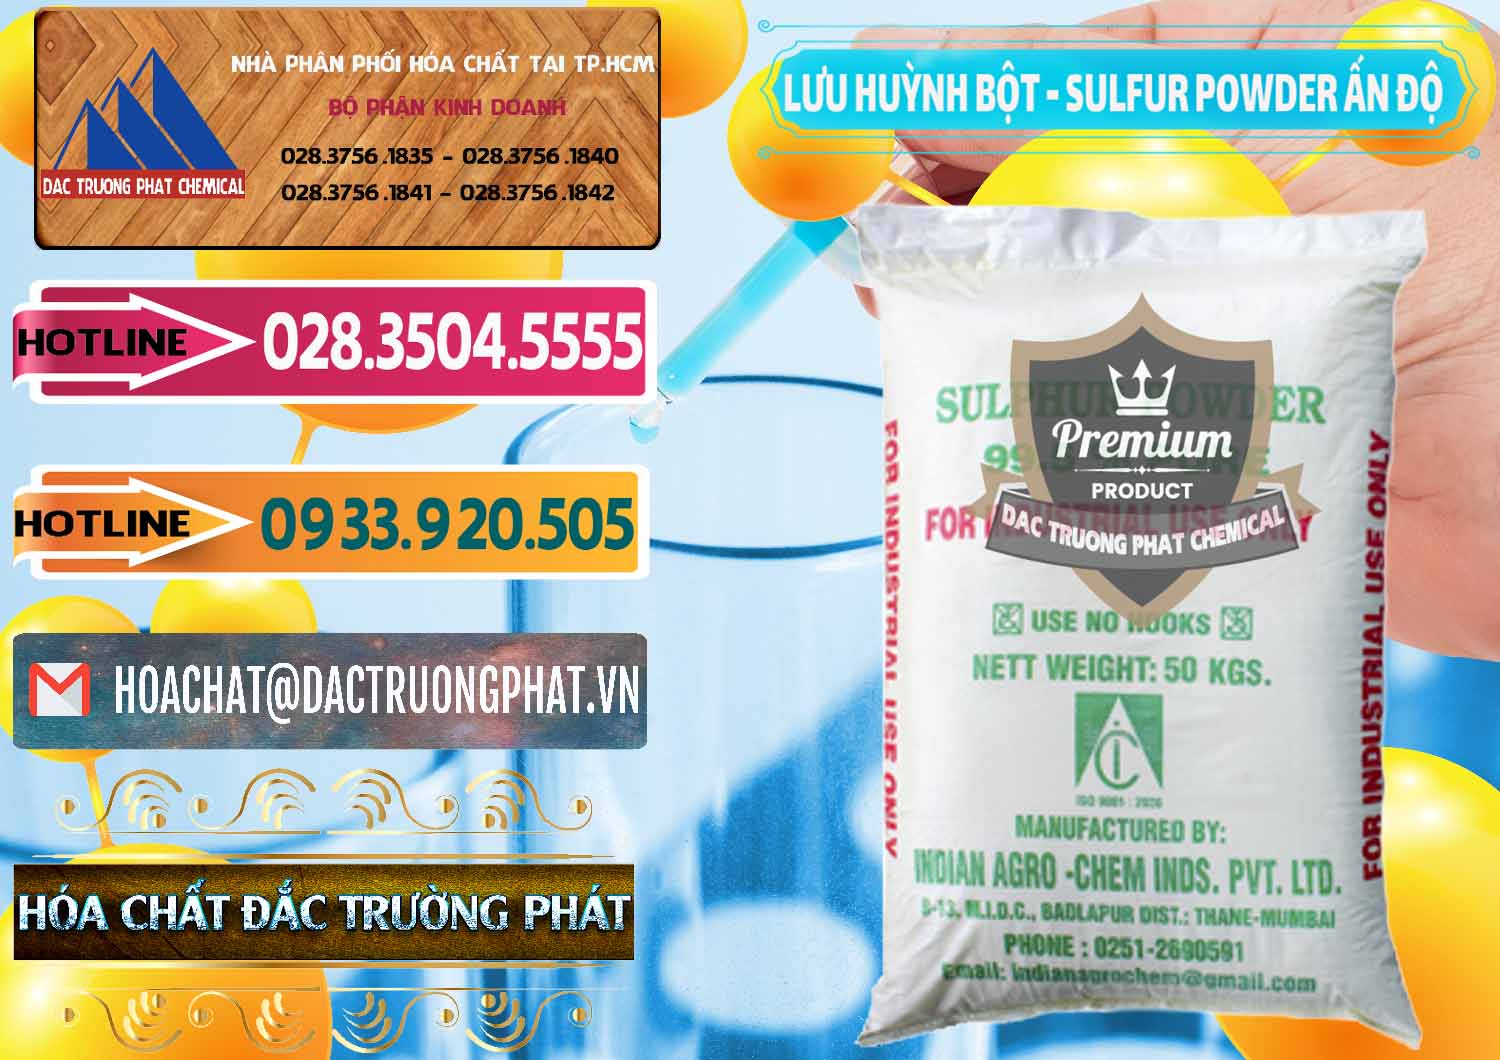 Bán _ phân phối Lưu huỳnh Bột - Sulfur Powder Ấn Độ India - 0347 - Cty cung cấp _ nhập khẩu hóa chất tại TP.HCM - dactruongphat.vn